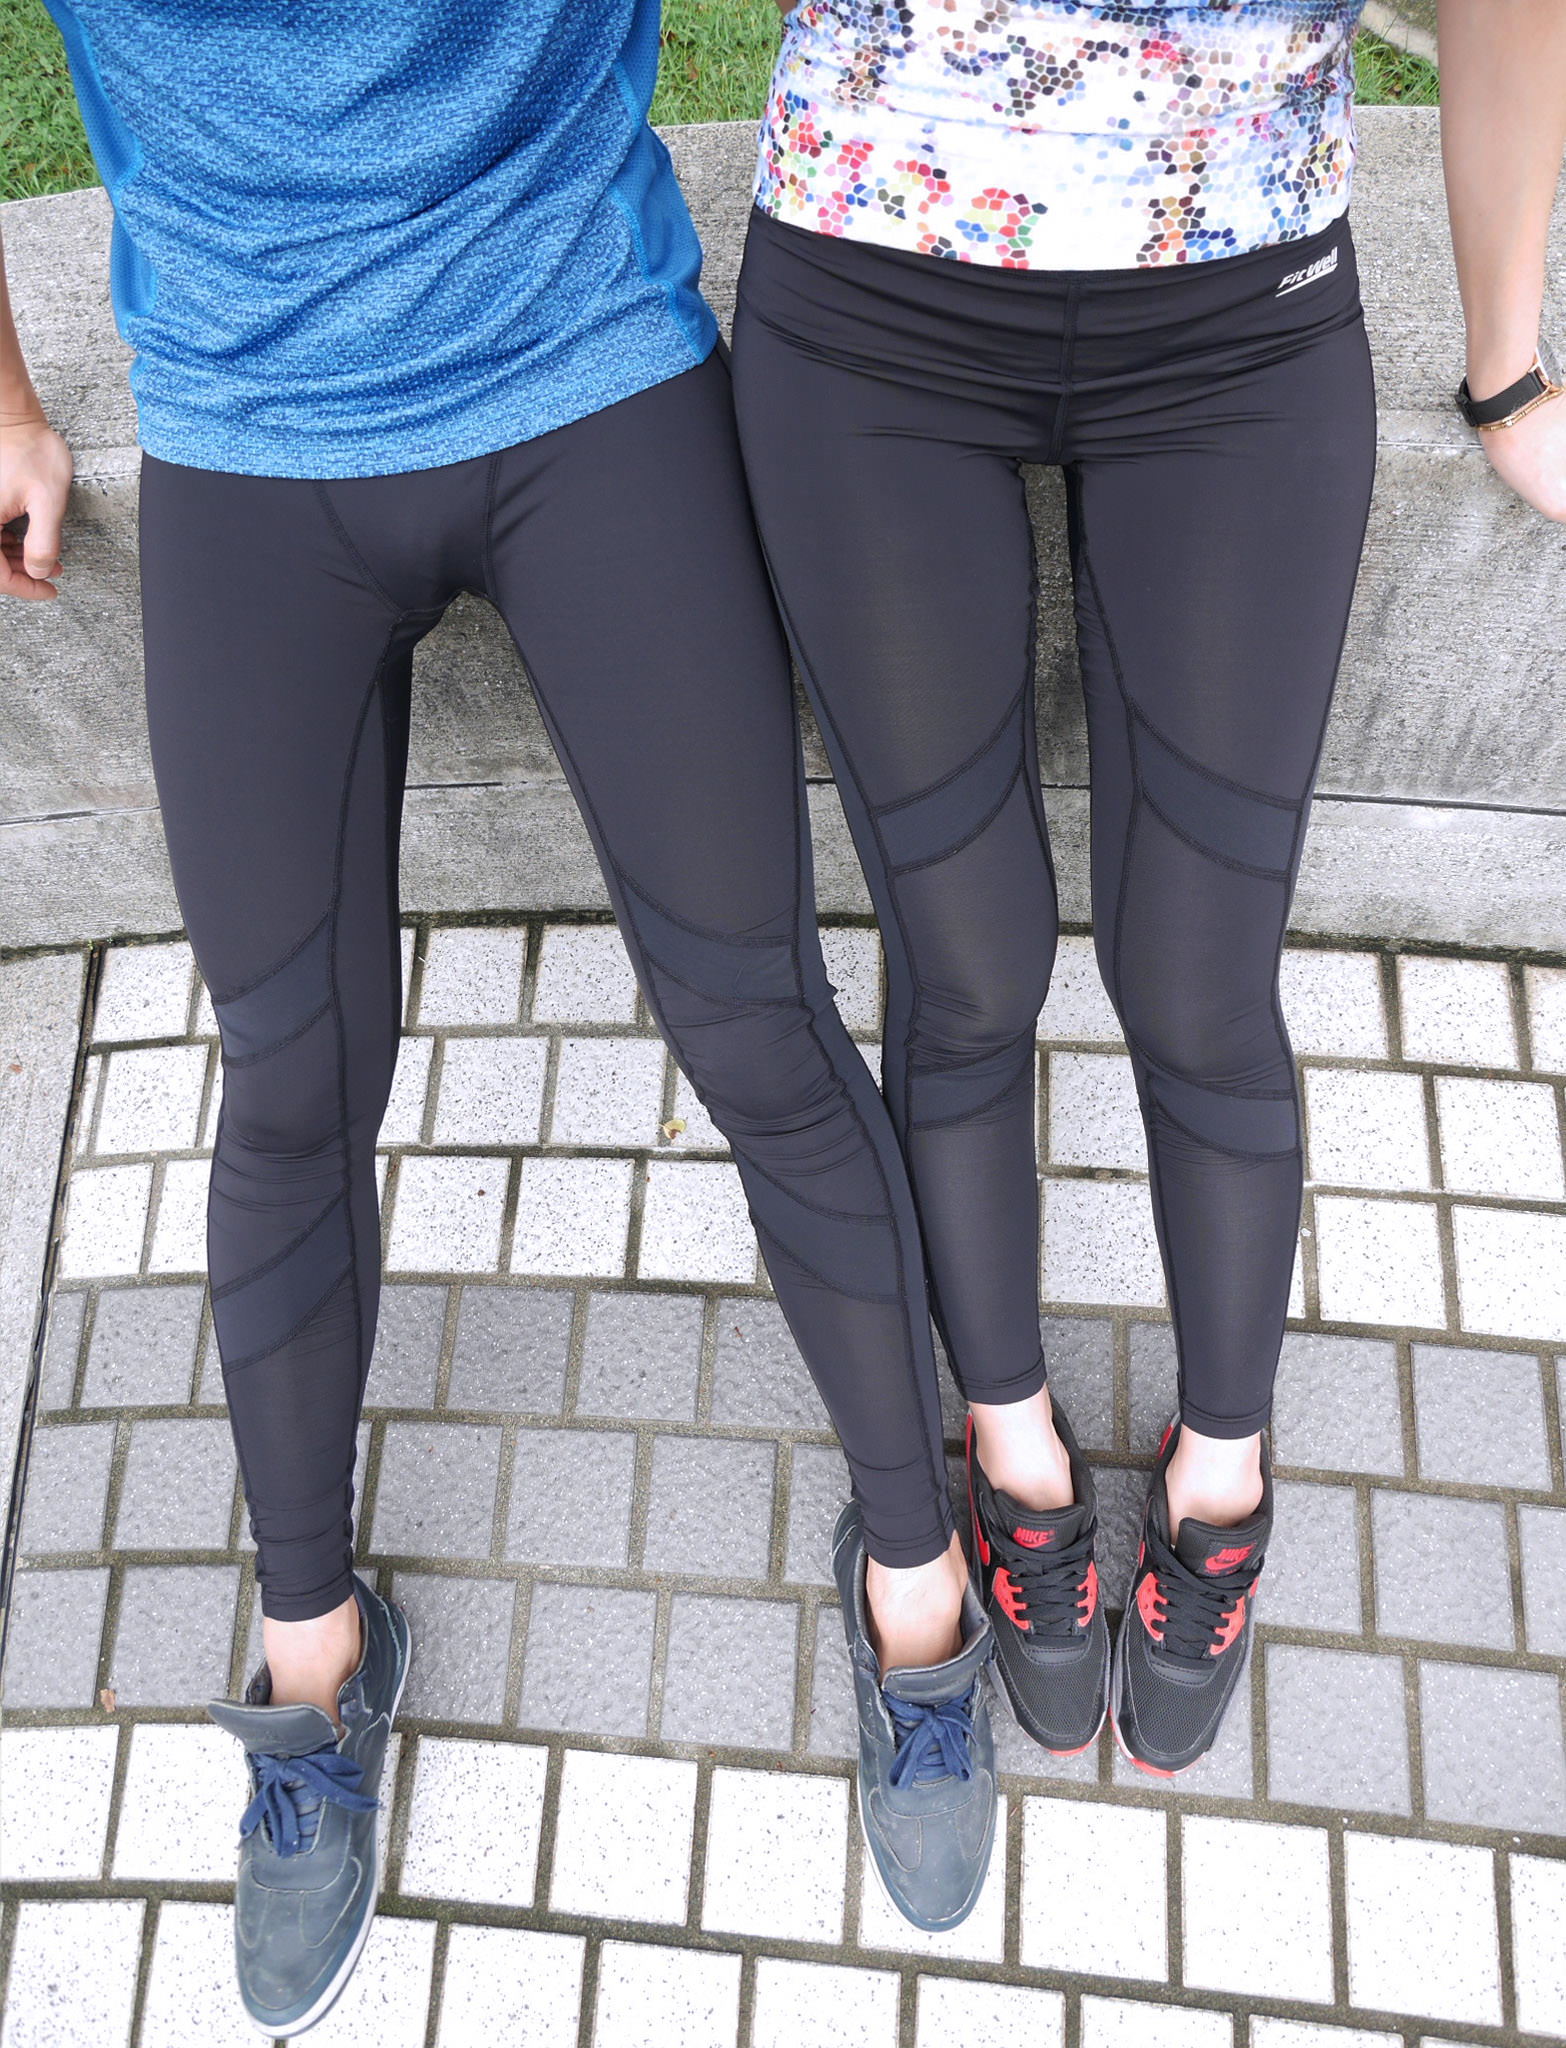 [穿搭] 運動事半功倍,護腿輕鬆跑跳,讓運動也可以很美麗的FitWell運動壓力褲